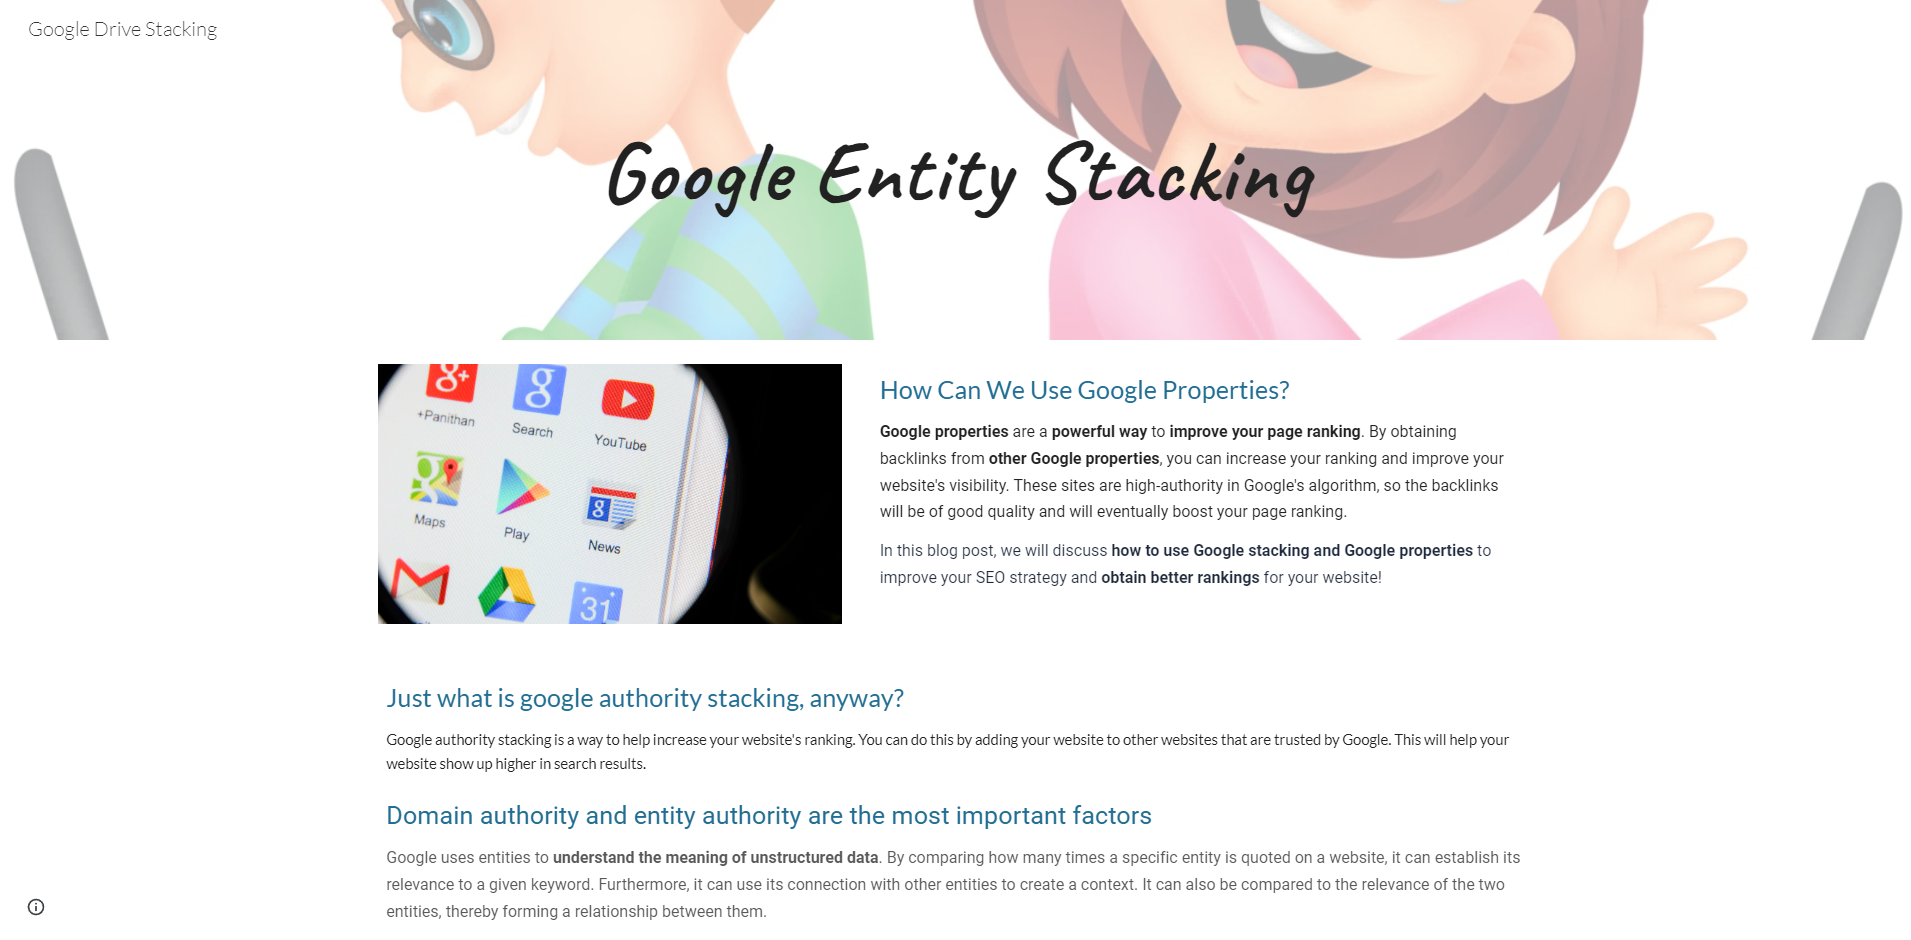 Google Stacking